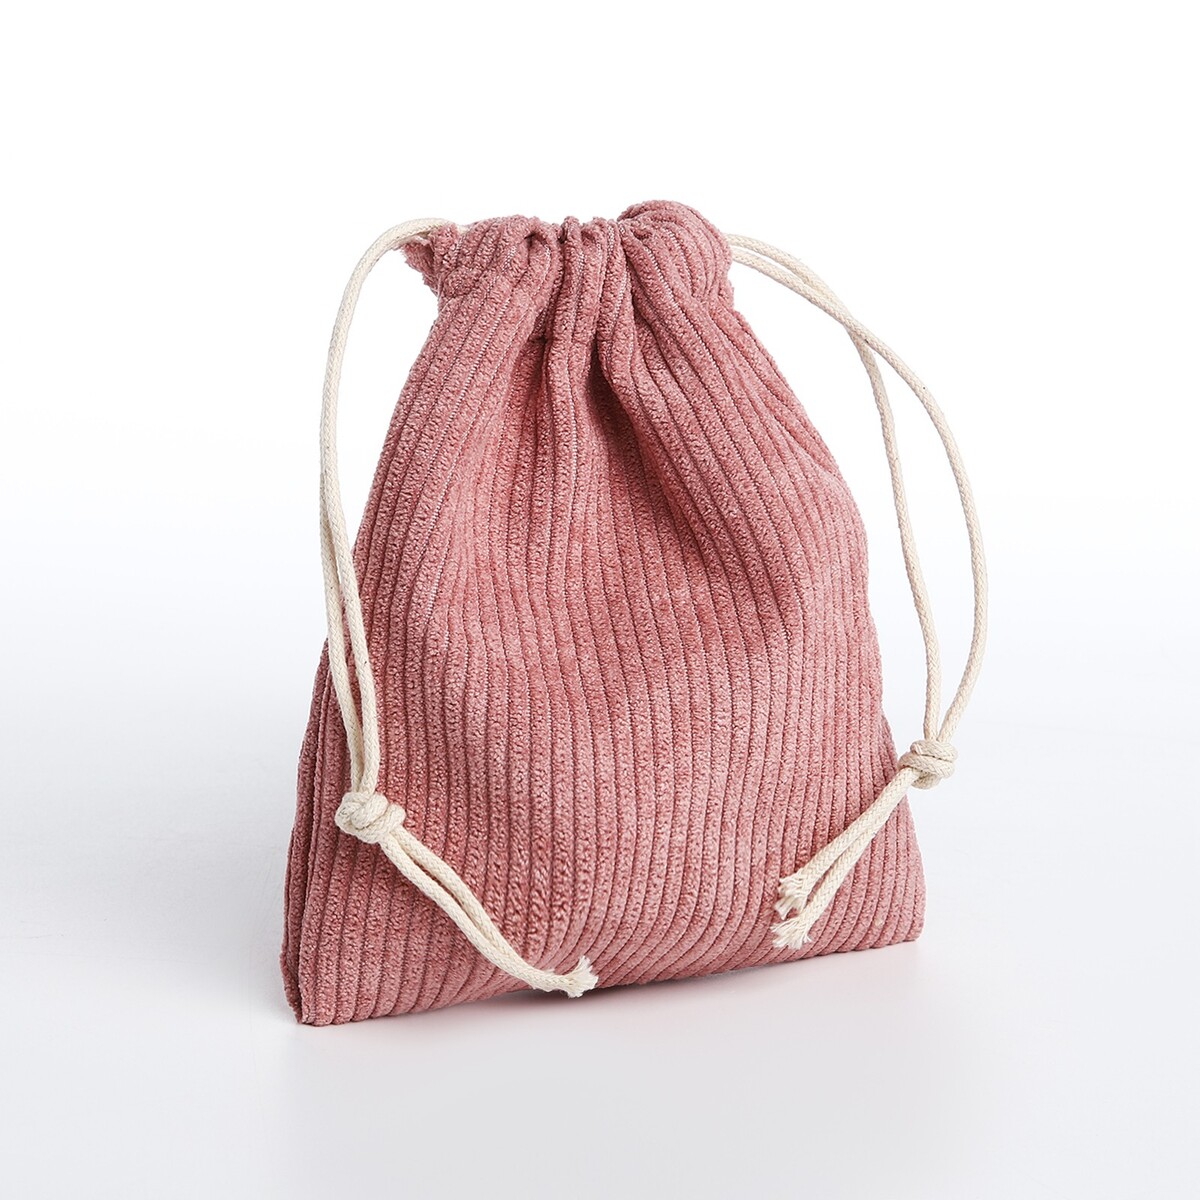 Косметичка - мешок с завязками, цвет розовый косметичка мешок с завязками сиренево розовый